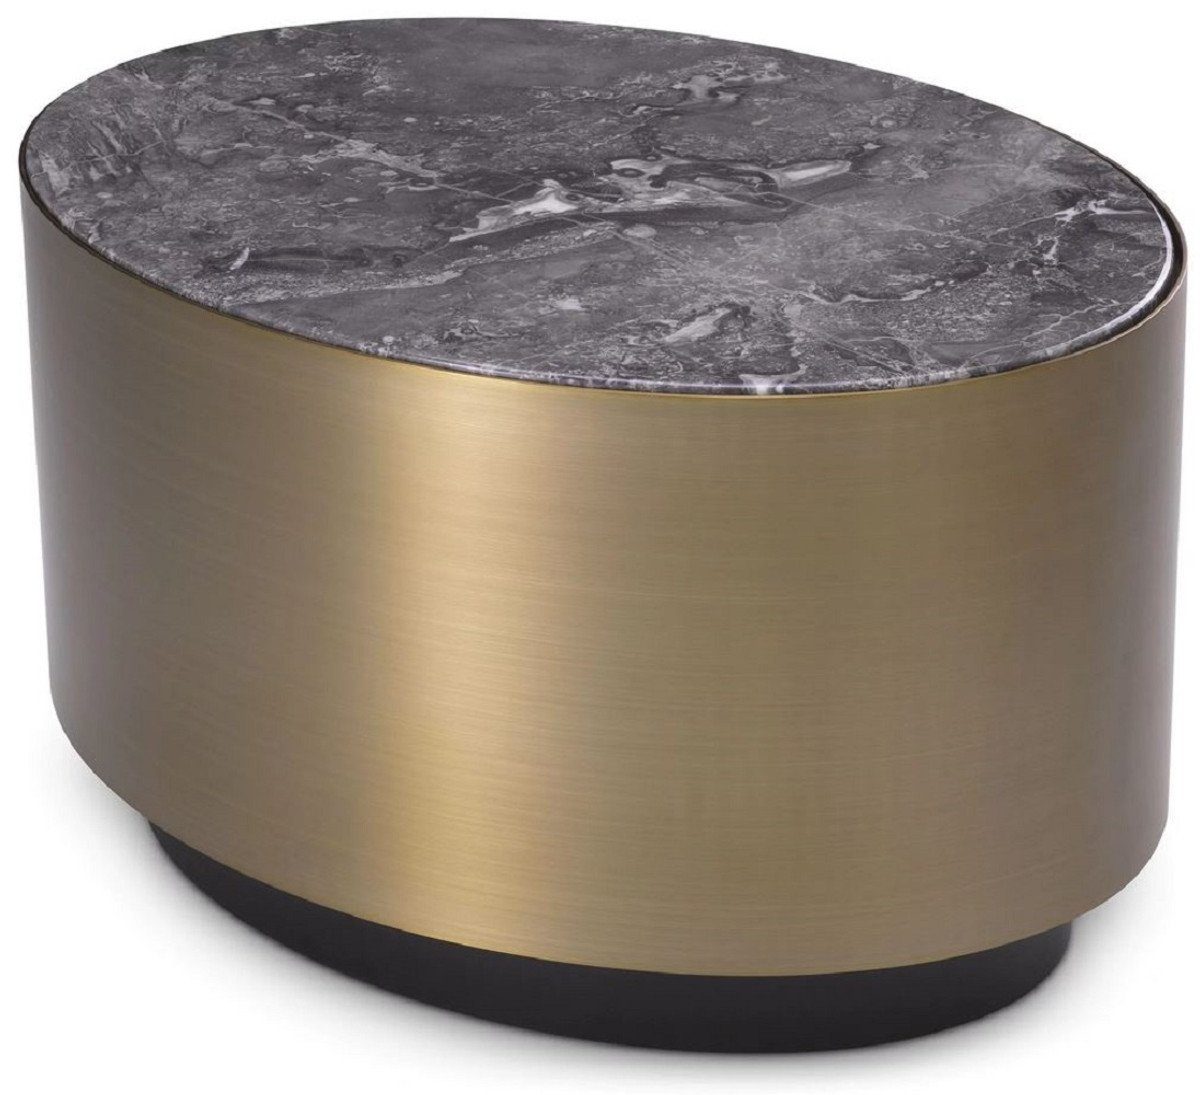 Casa Padrino Beistelltisch Luxus Beistelltisch Marmorplatte Tisch cm Ovaler Luxus 48 Möbel - / 65 mit - - x Qualität Grau Messingfarben / x Luxus Schwarz Edelstahl H. 38,5